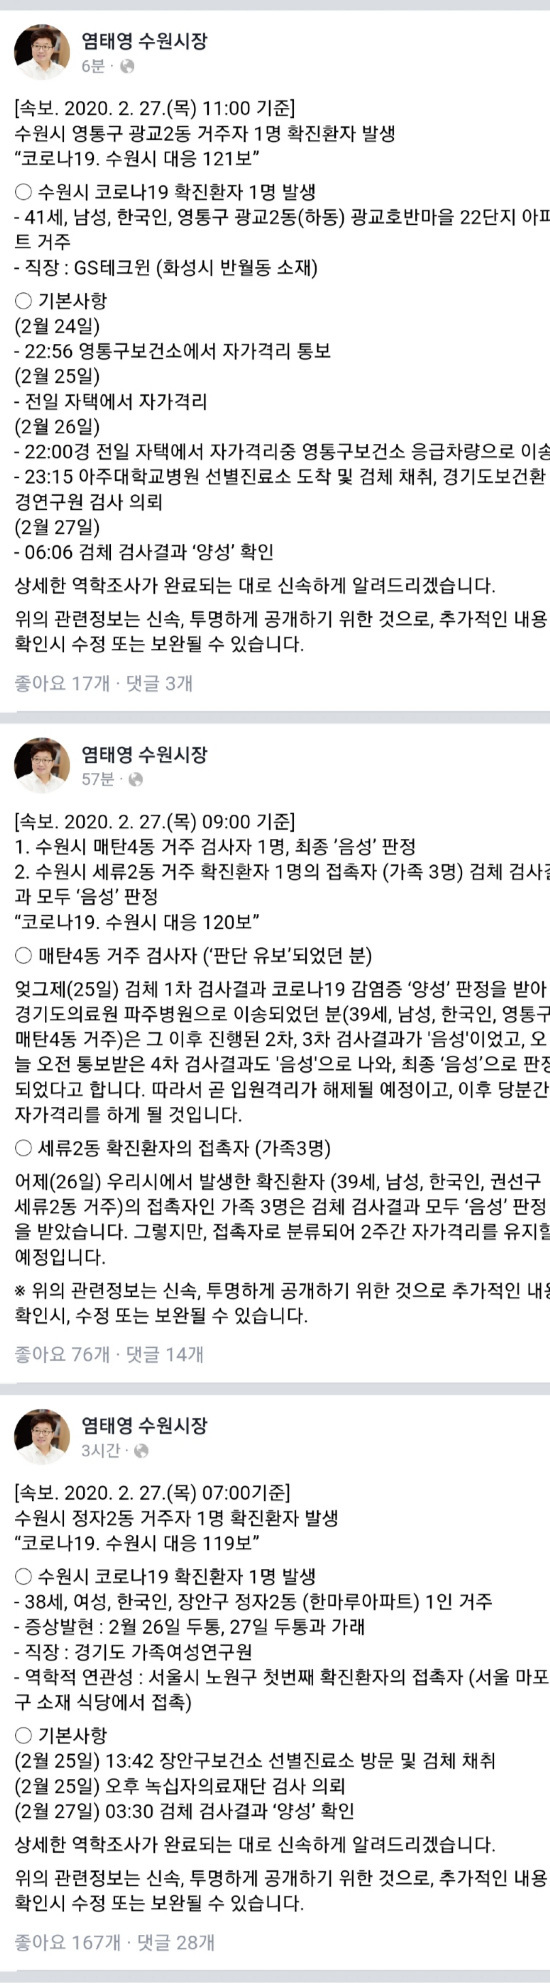 [Corona 19 Tình trạng trong nước Suwon] Xuất hiện thêm xác nhận Jeongja 2-dong và Gwanggyo 2-dong